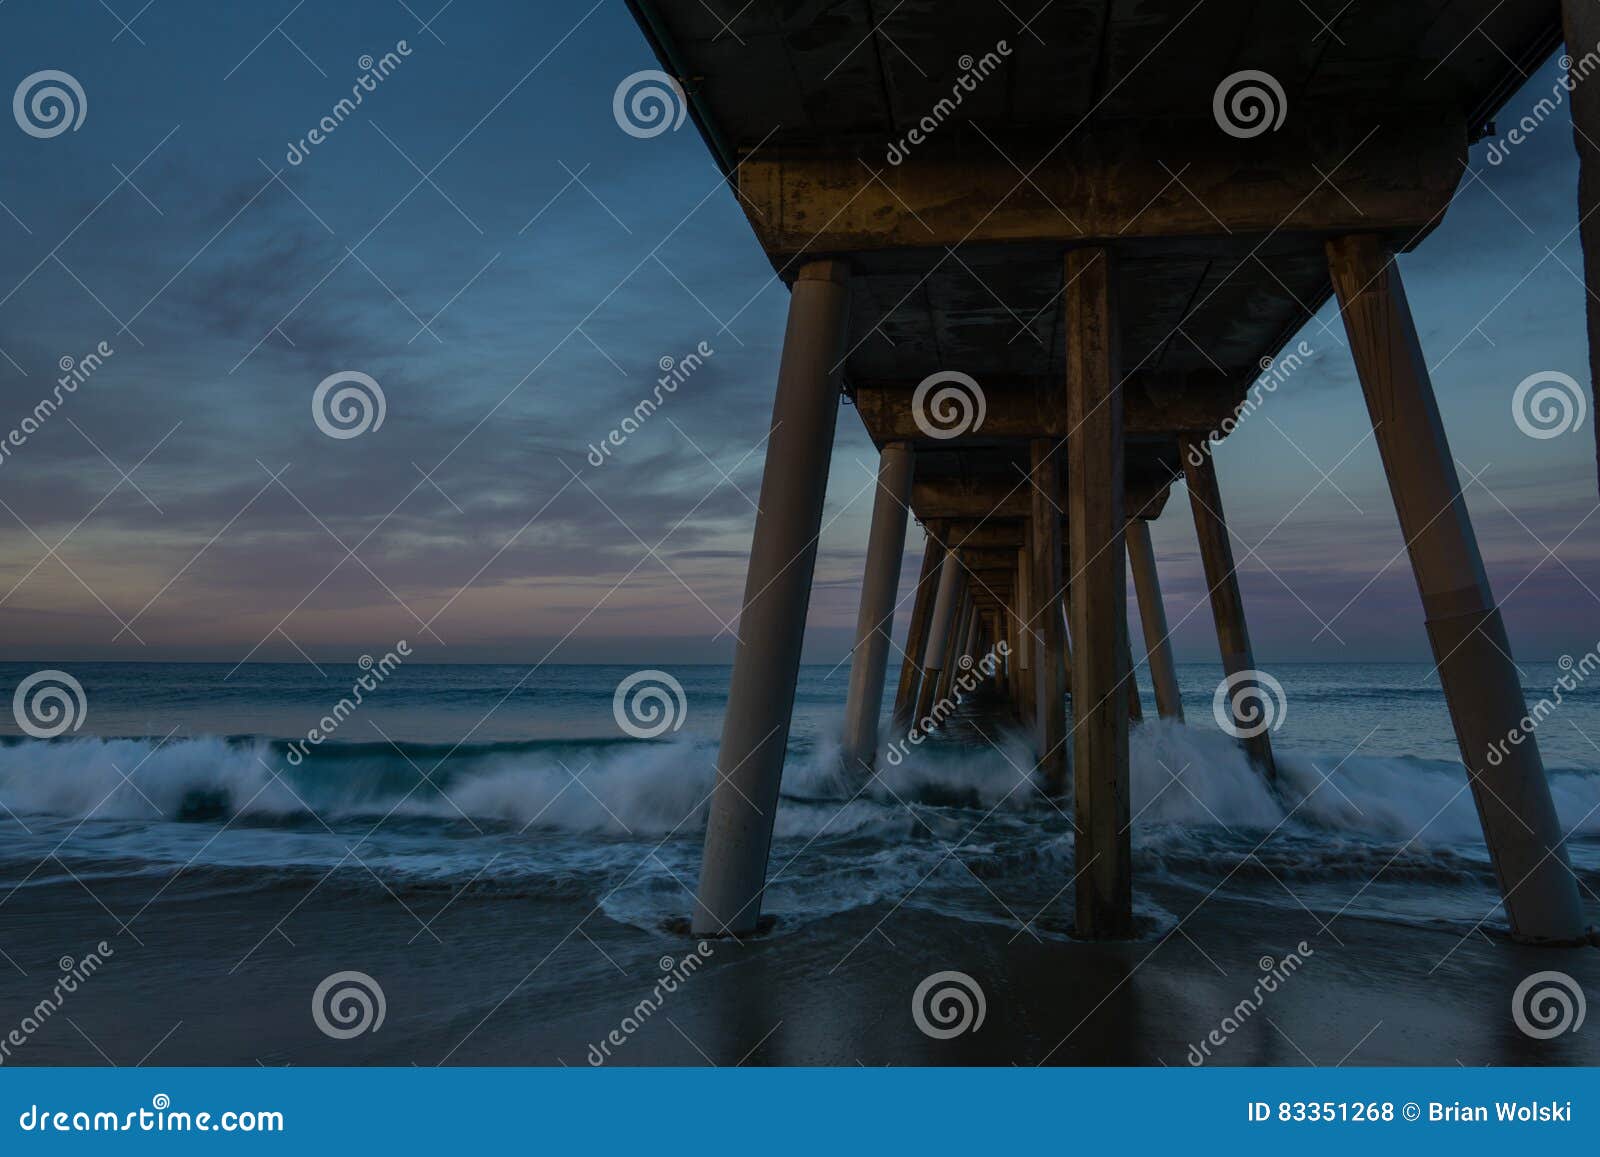 waves under hermosa beach pier